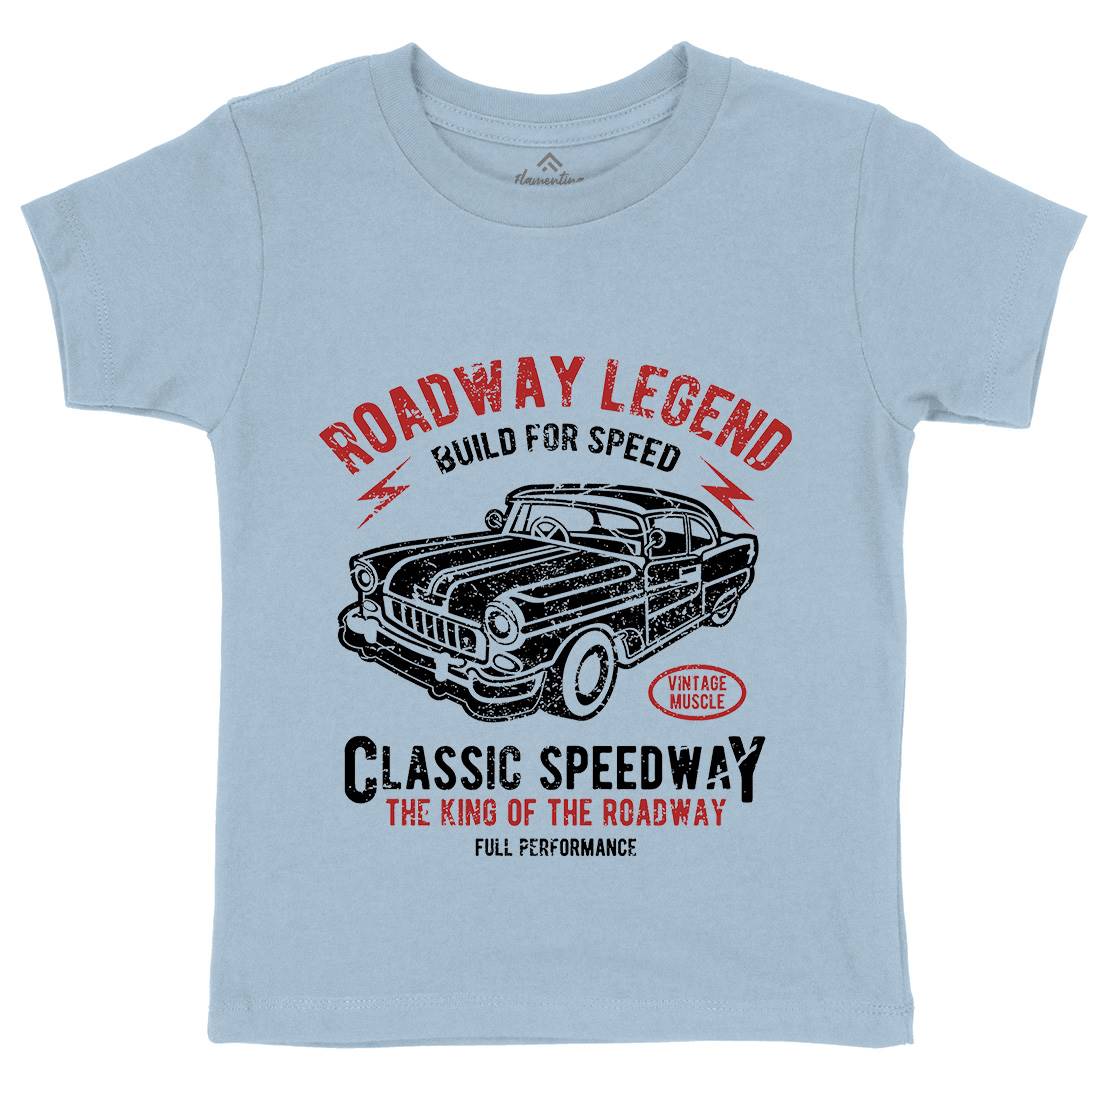 Roadway Legend Kids Crew Neck T-Shirt Cars A124